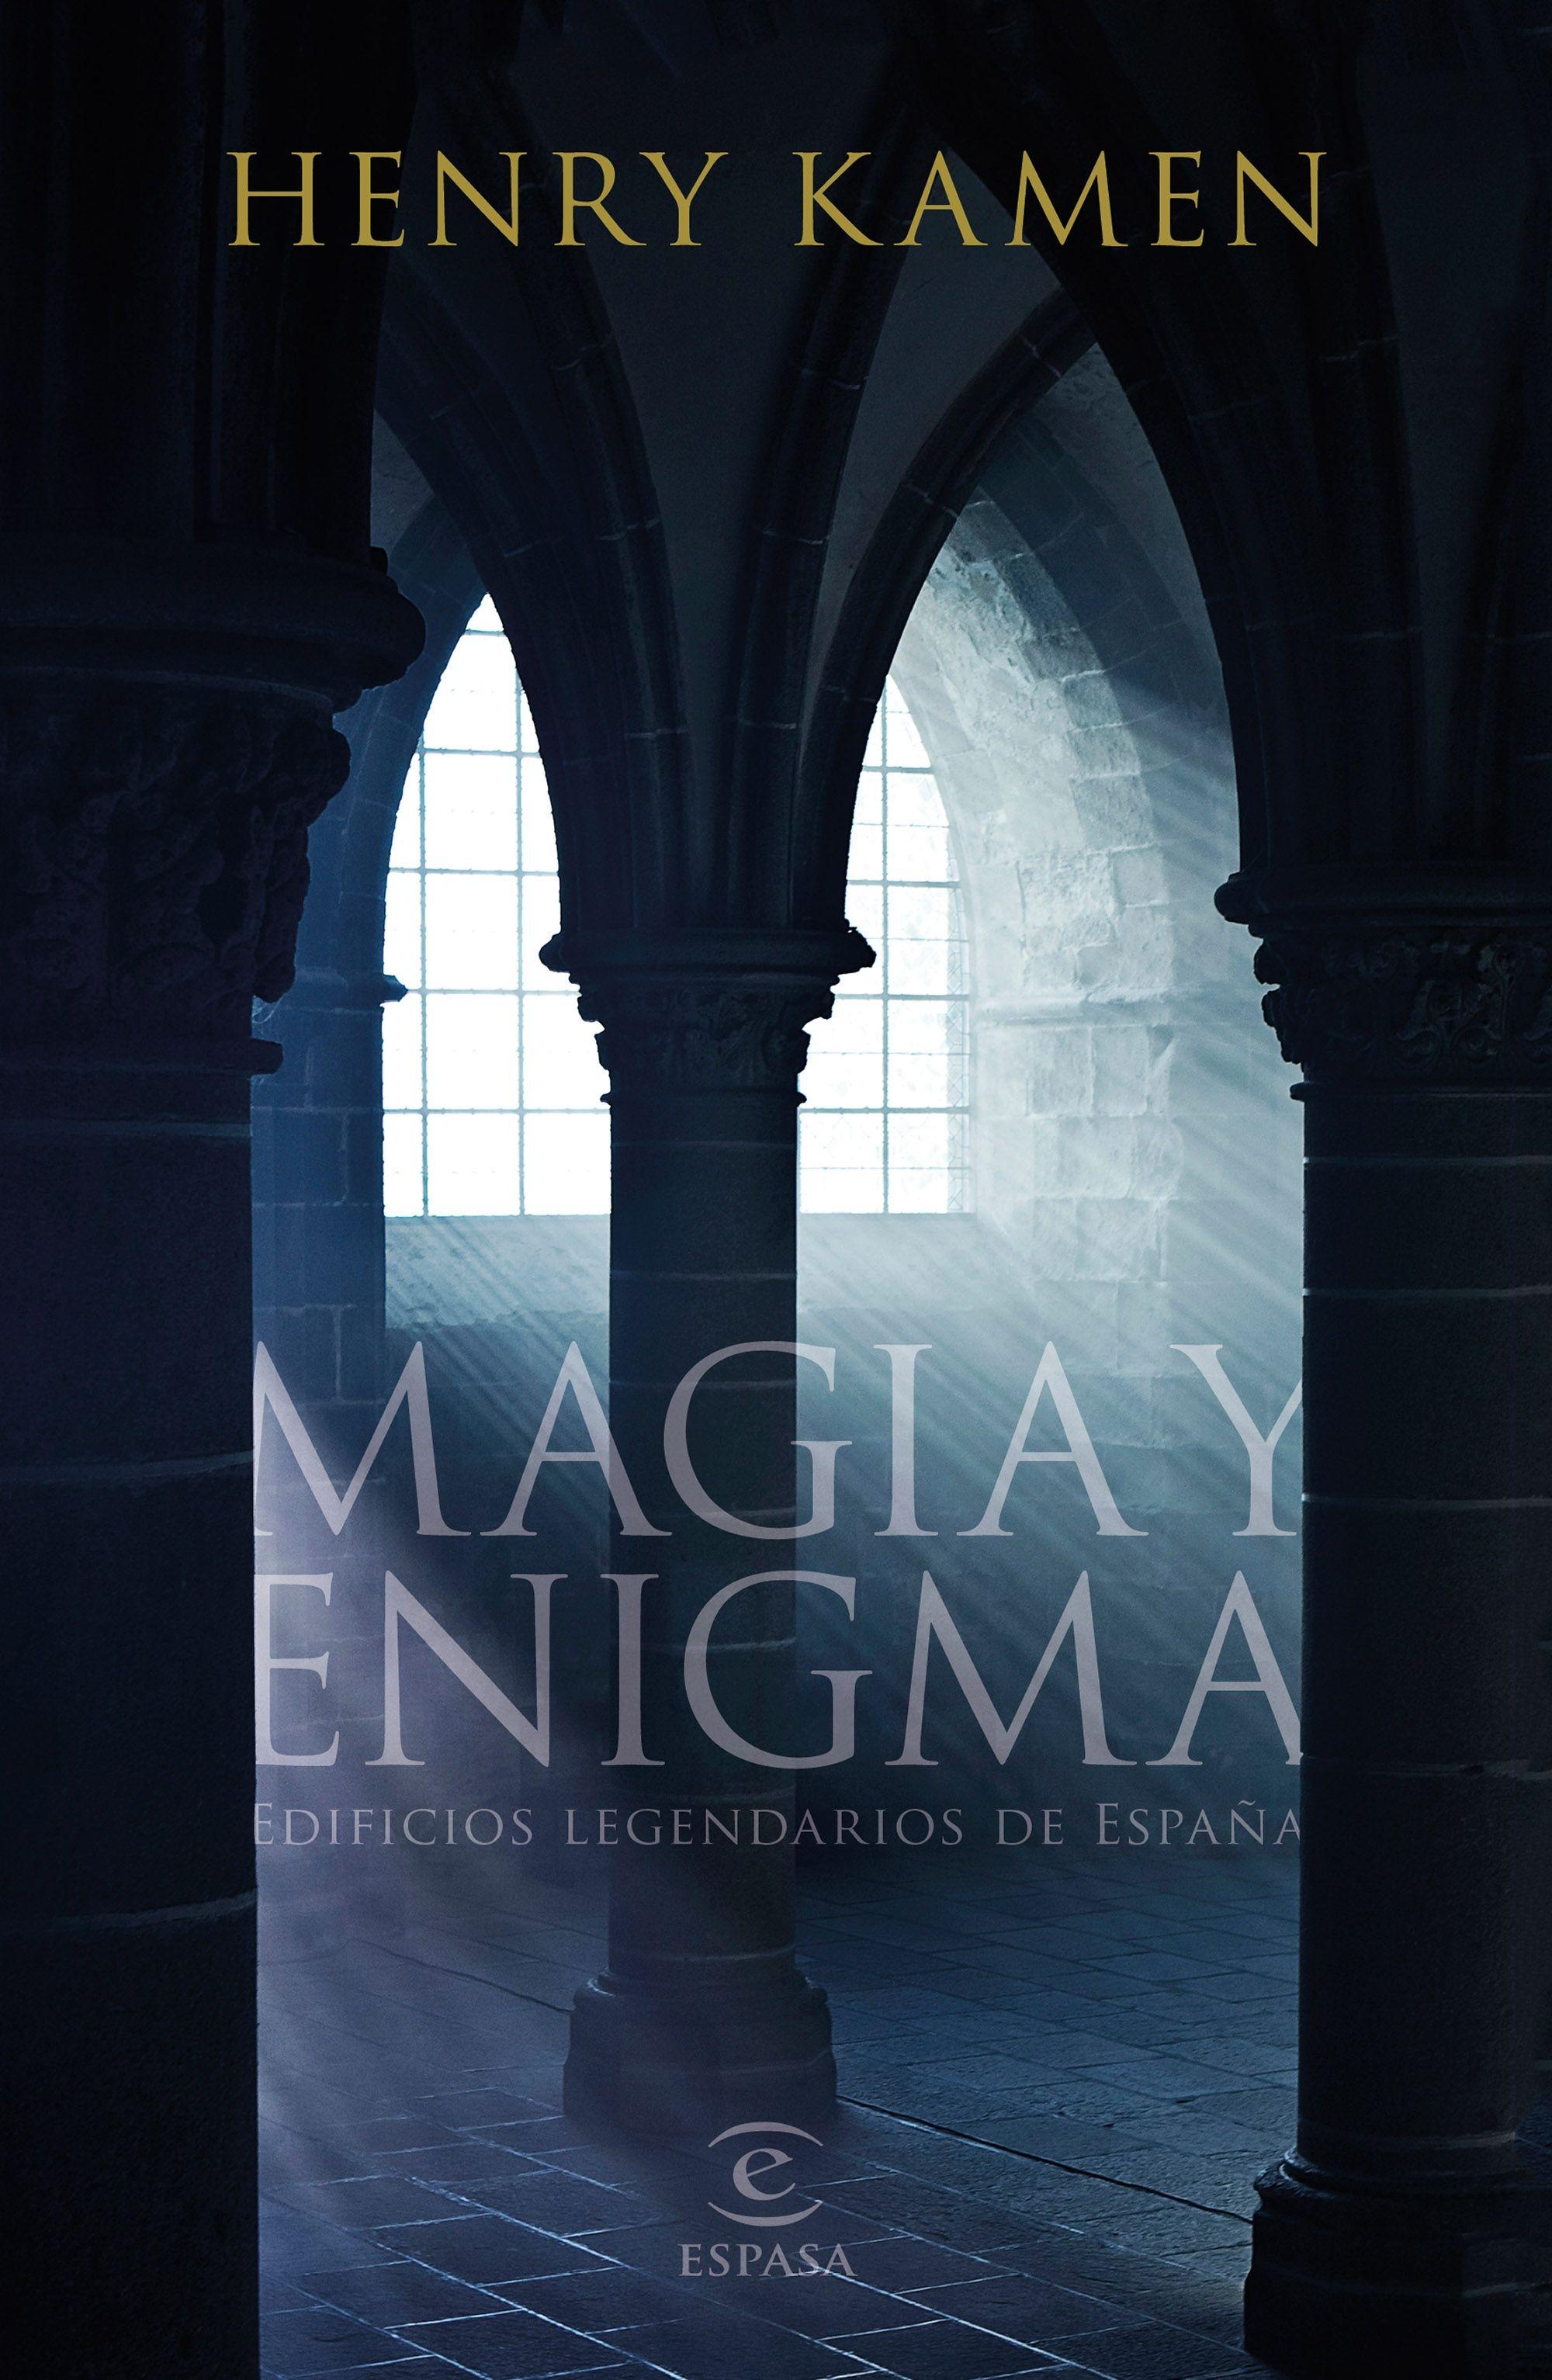 Magia y enigma "Edificios legendarios de España"